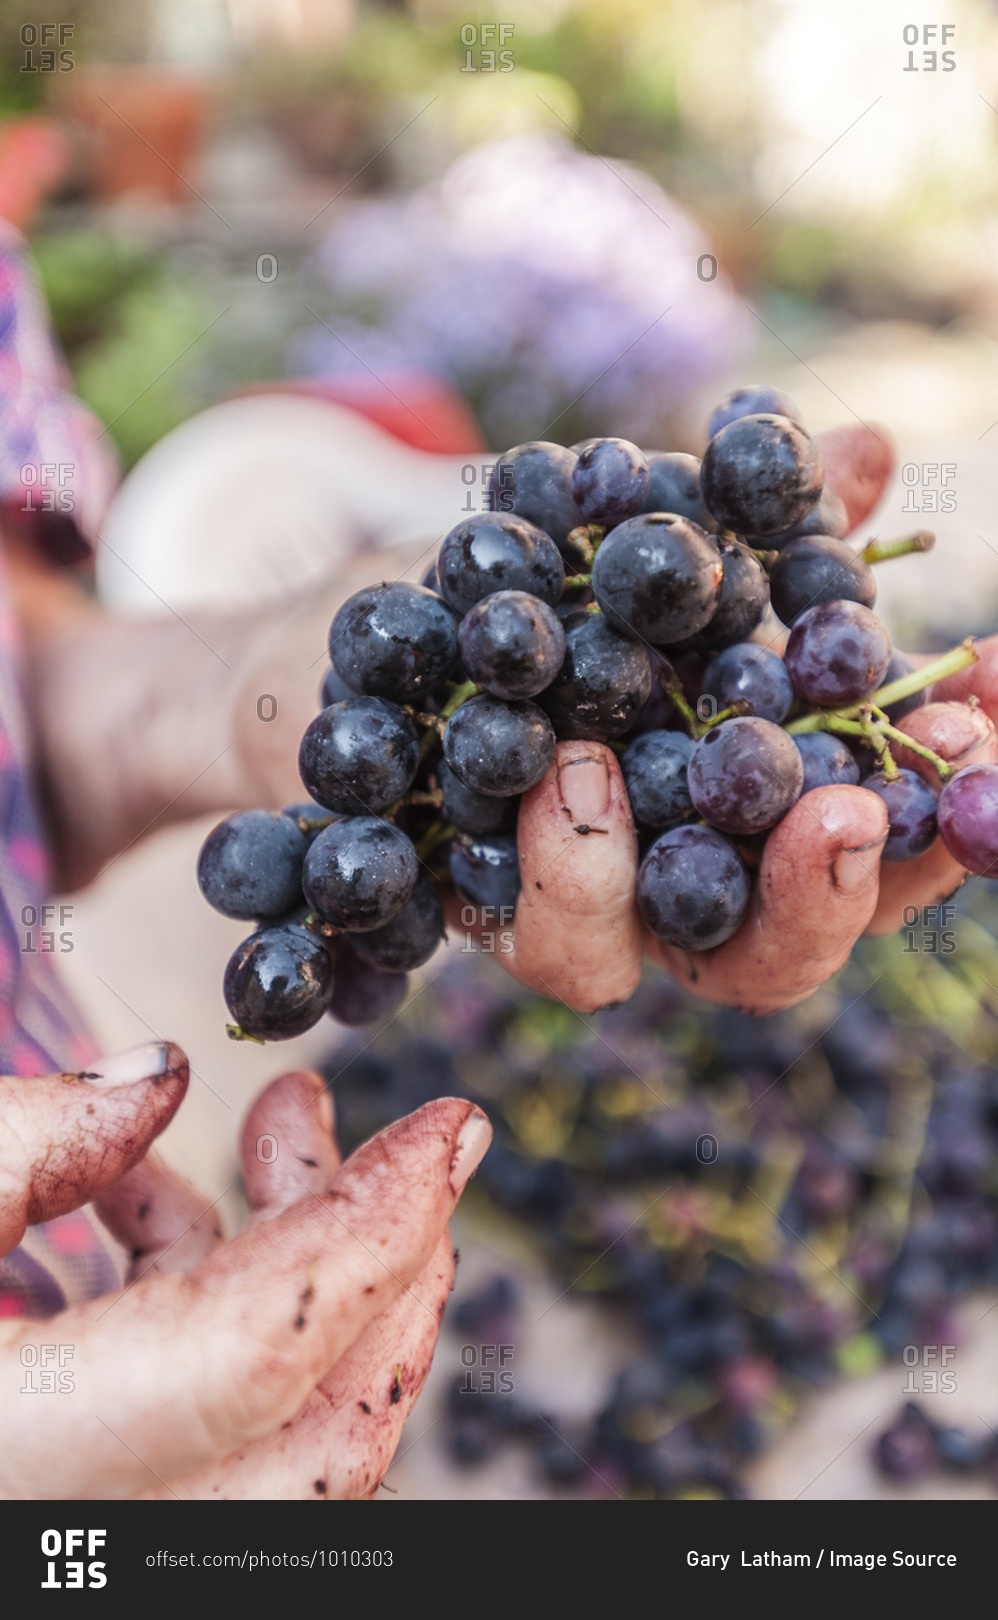 Mature woman hands sorting black grapes to make grappa, Moghegno Village, Maggia Valley, Ticino, Switzerland